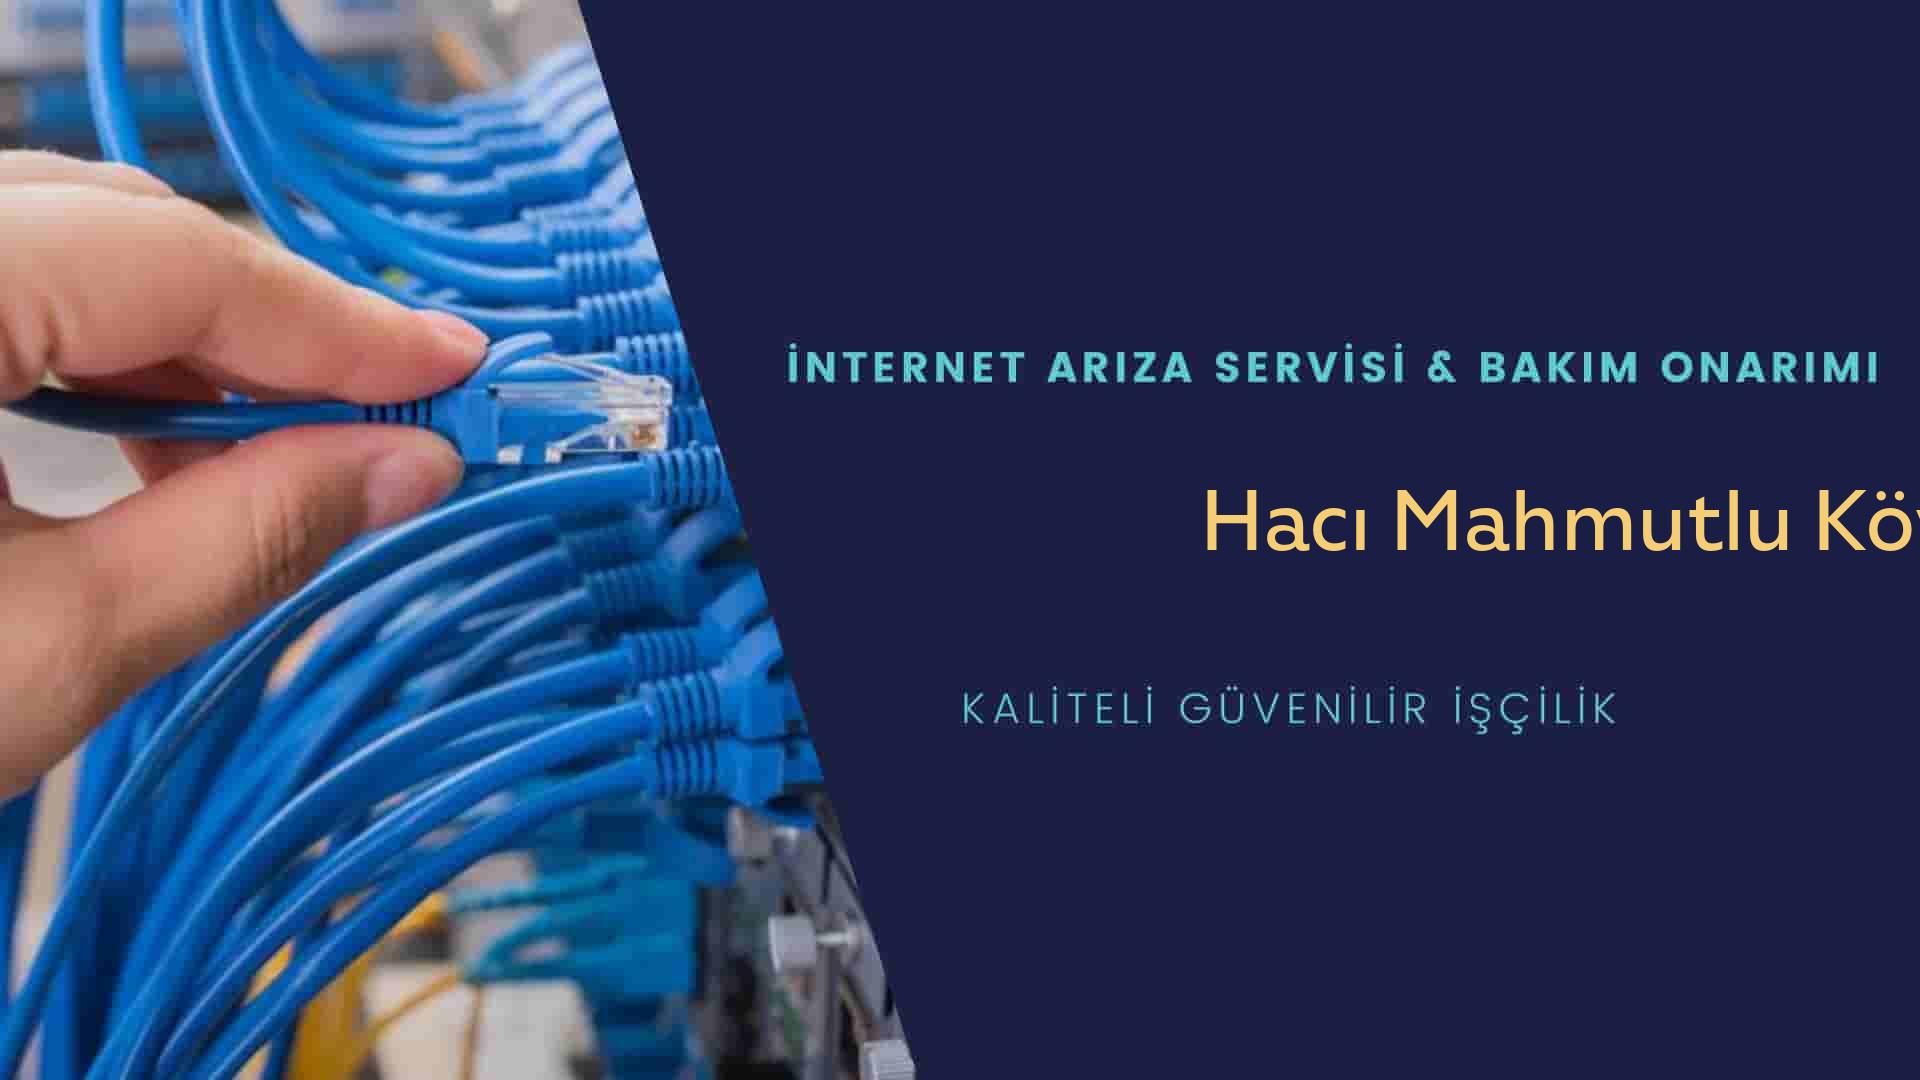 Hacı Mahmutlu Köyü internet kablosu çekimi yapan yerler veya elektrikçiler mi? arıyorsunuz doğru yerdesiniz o zaman sizlere 7/24 yardımcı olacak profesyonel ustalarımız bir telefon kadar yakındır size.